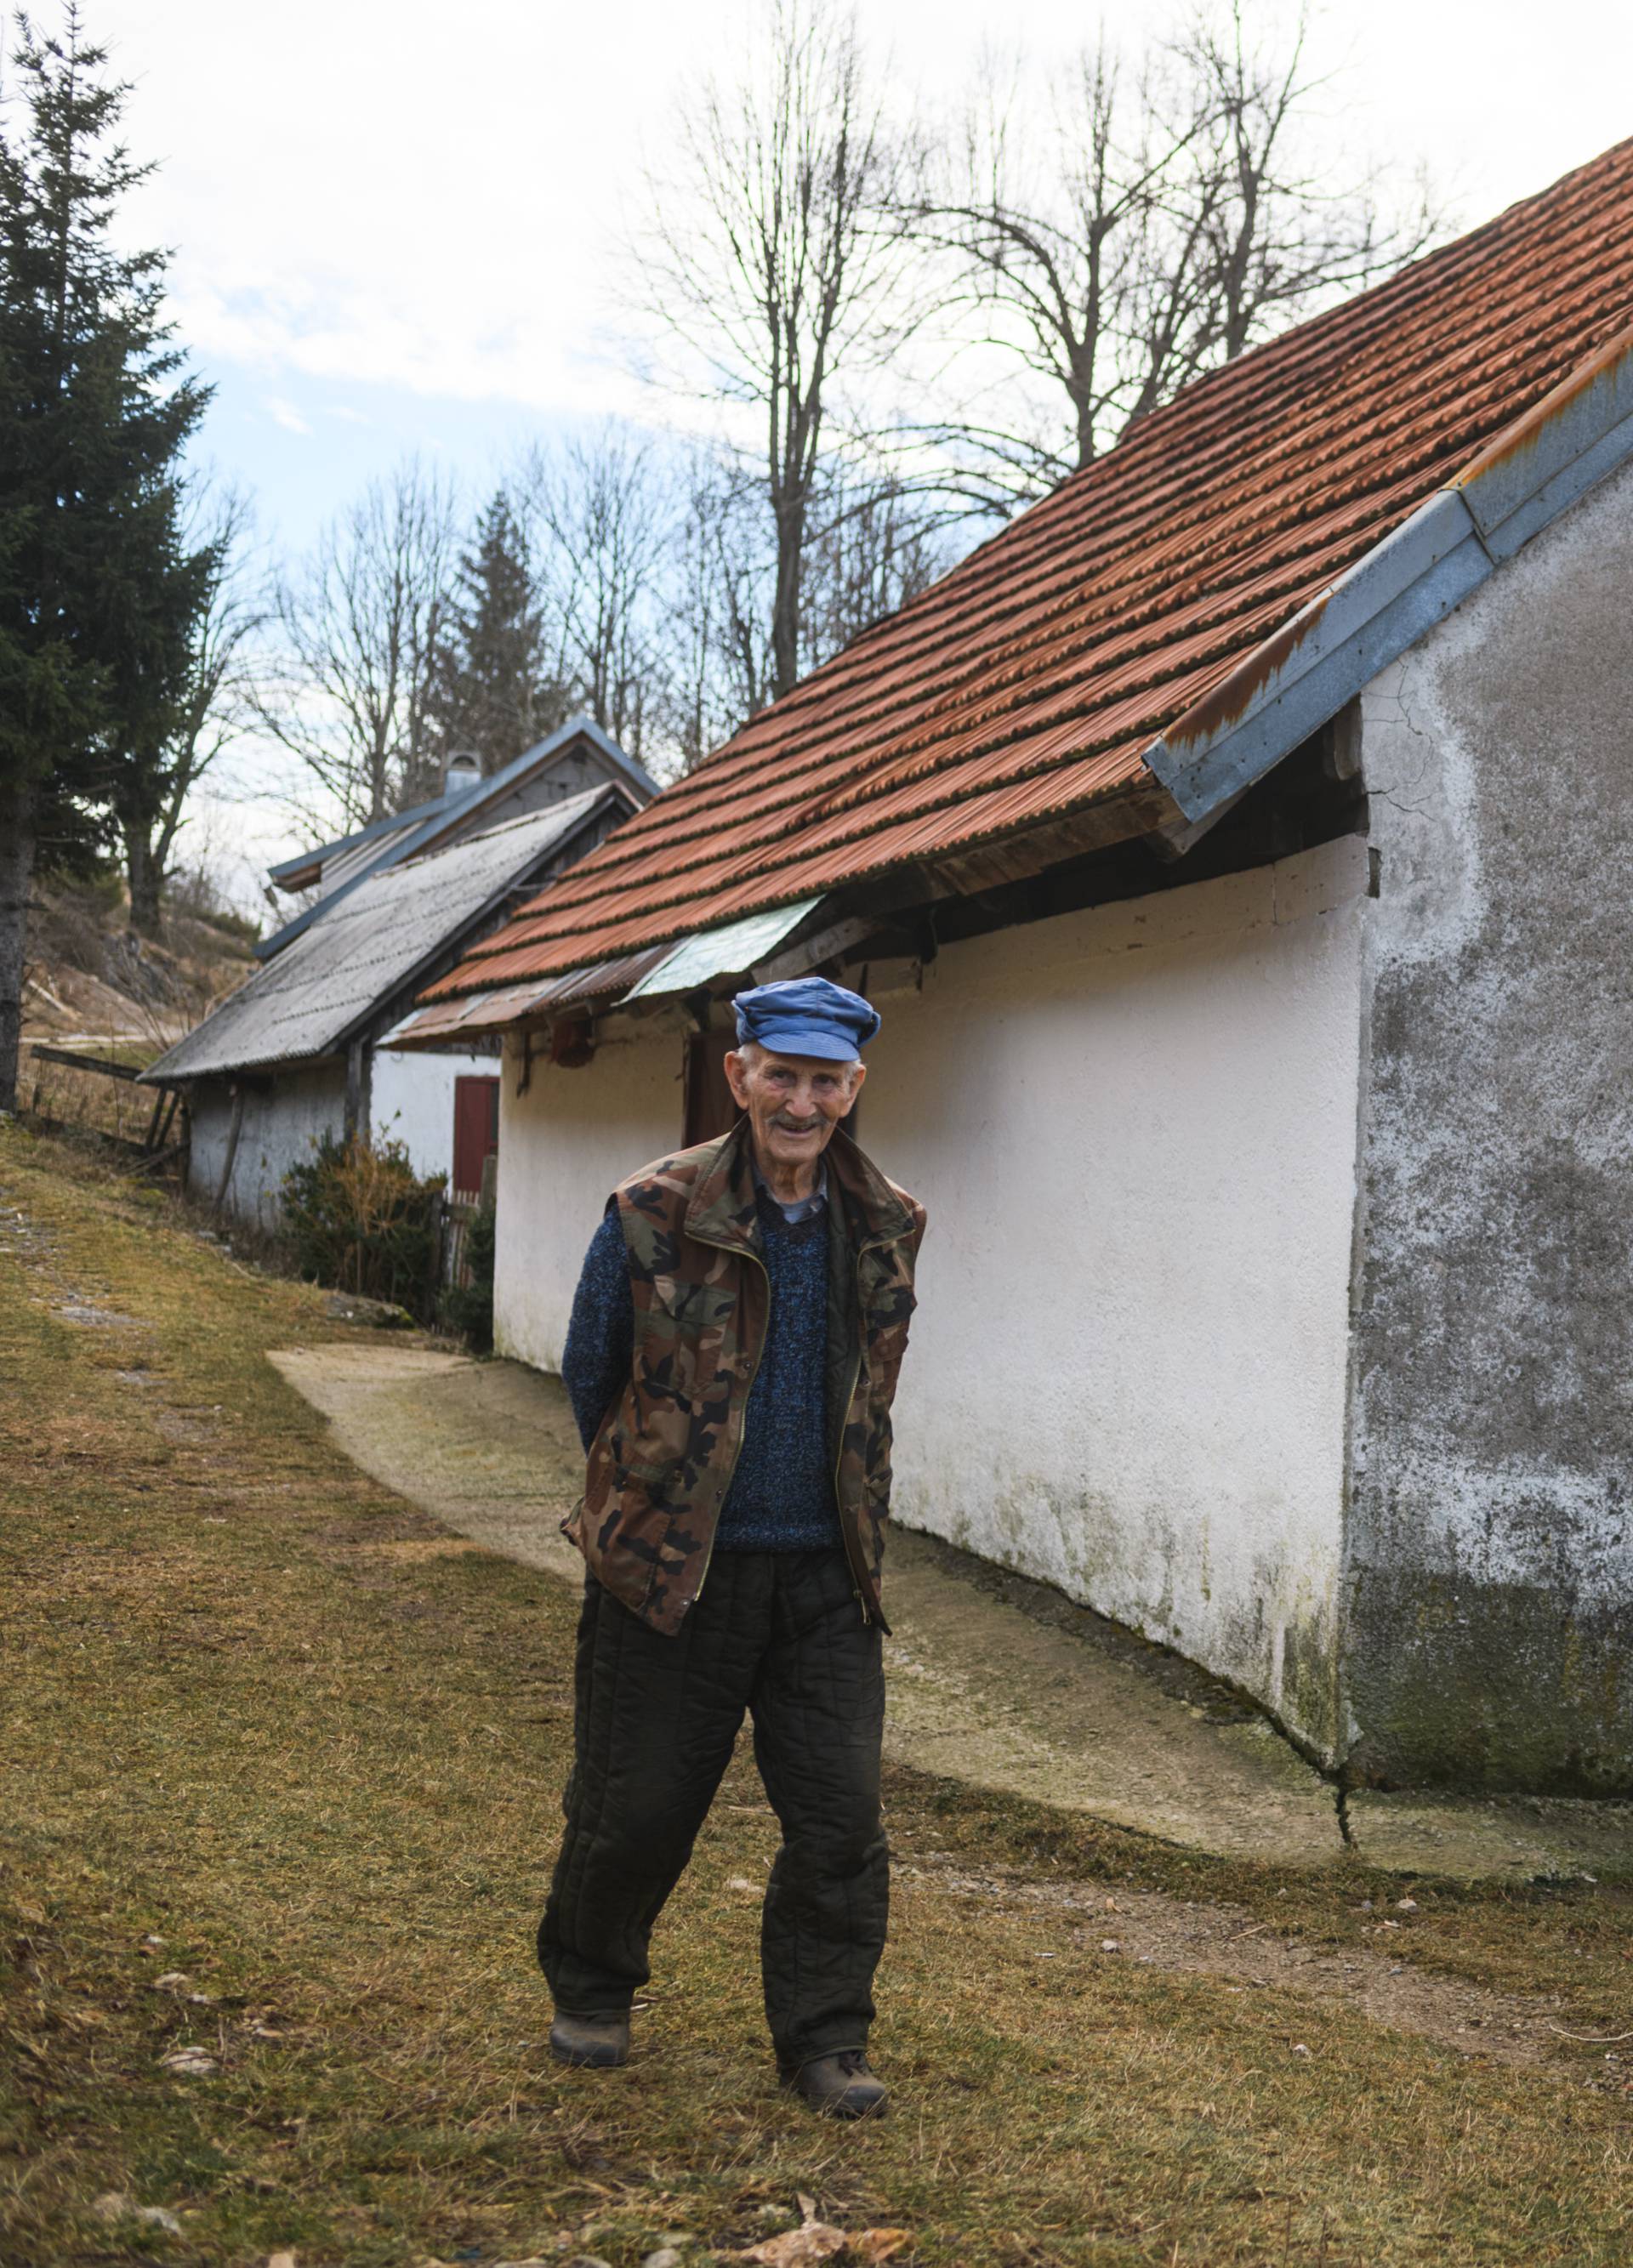 'Imam 95 godina i živim sam u selu. Prozor je moja televizija'